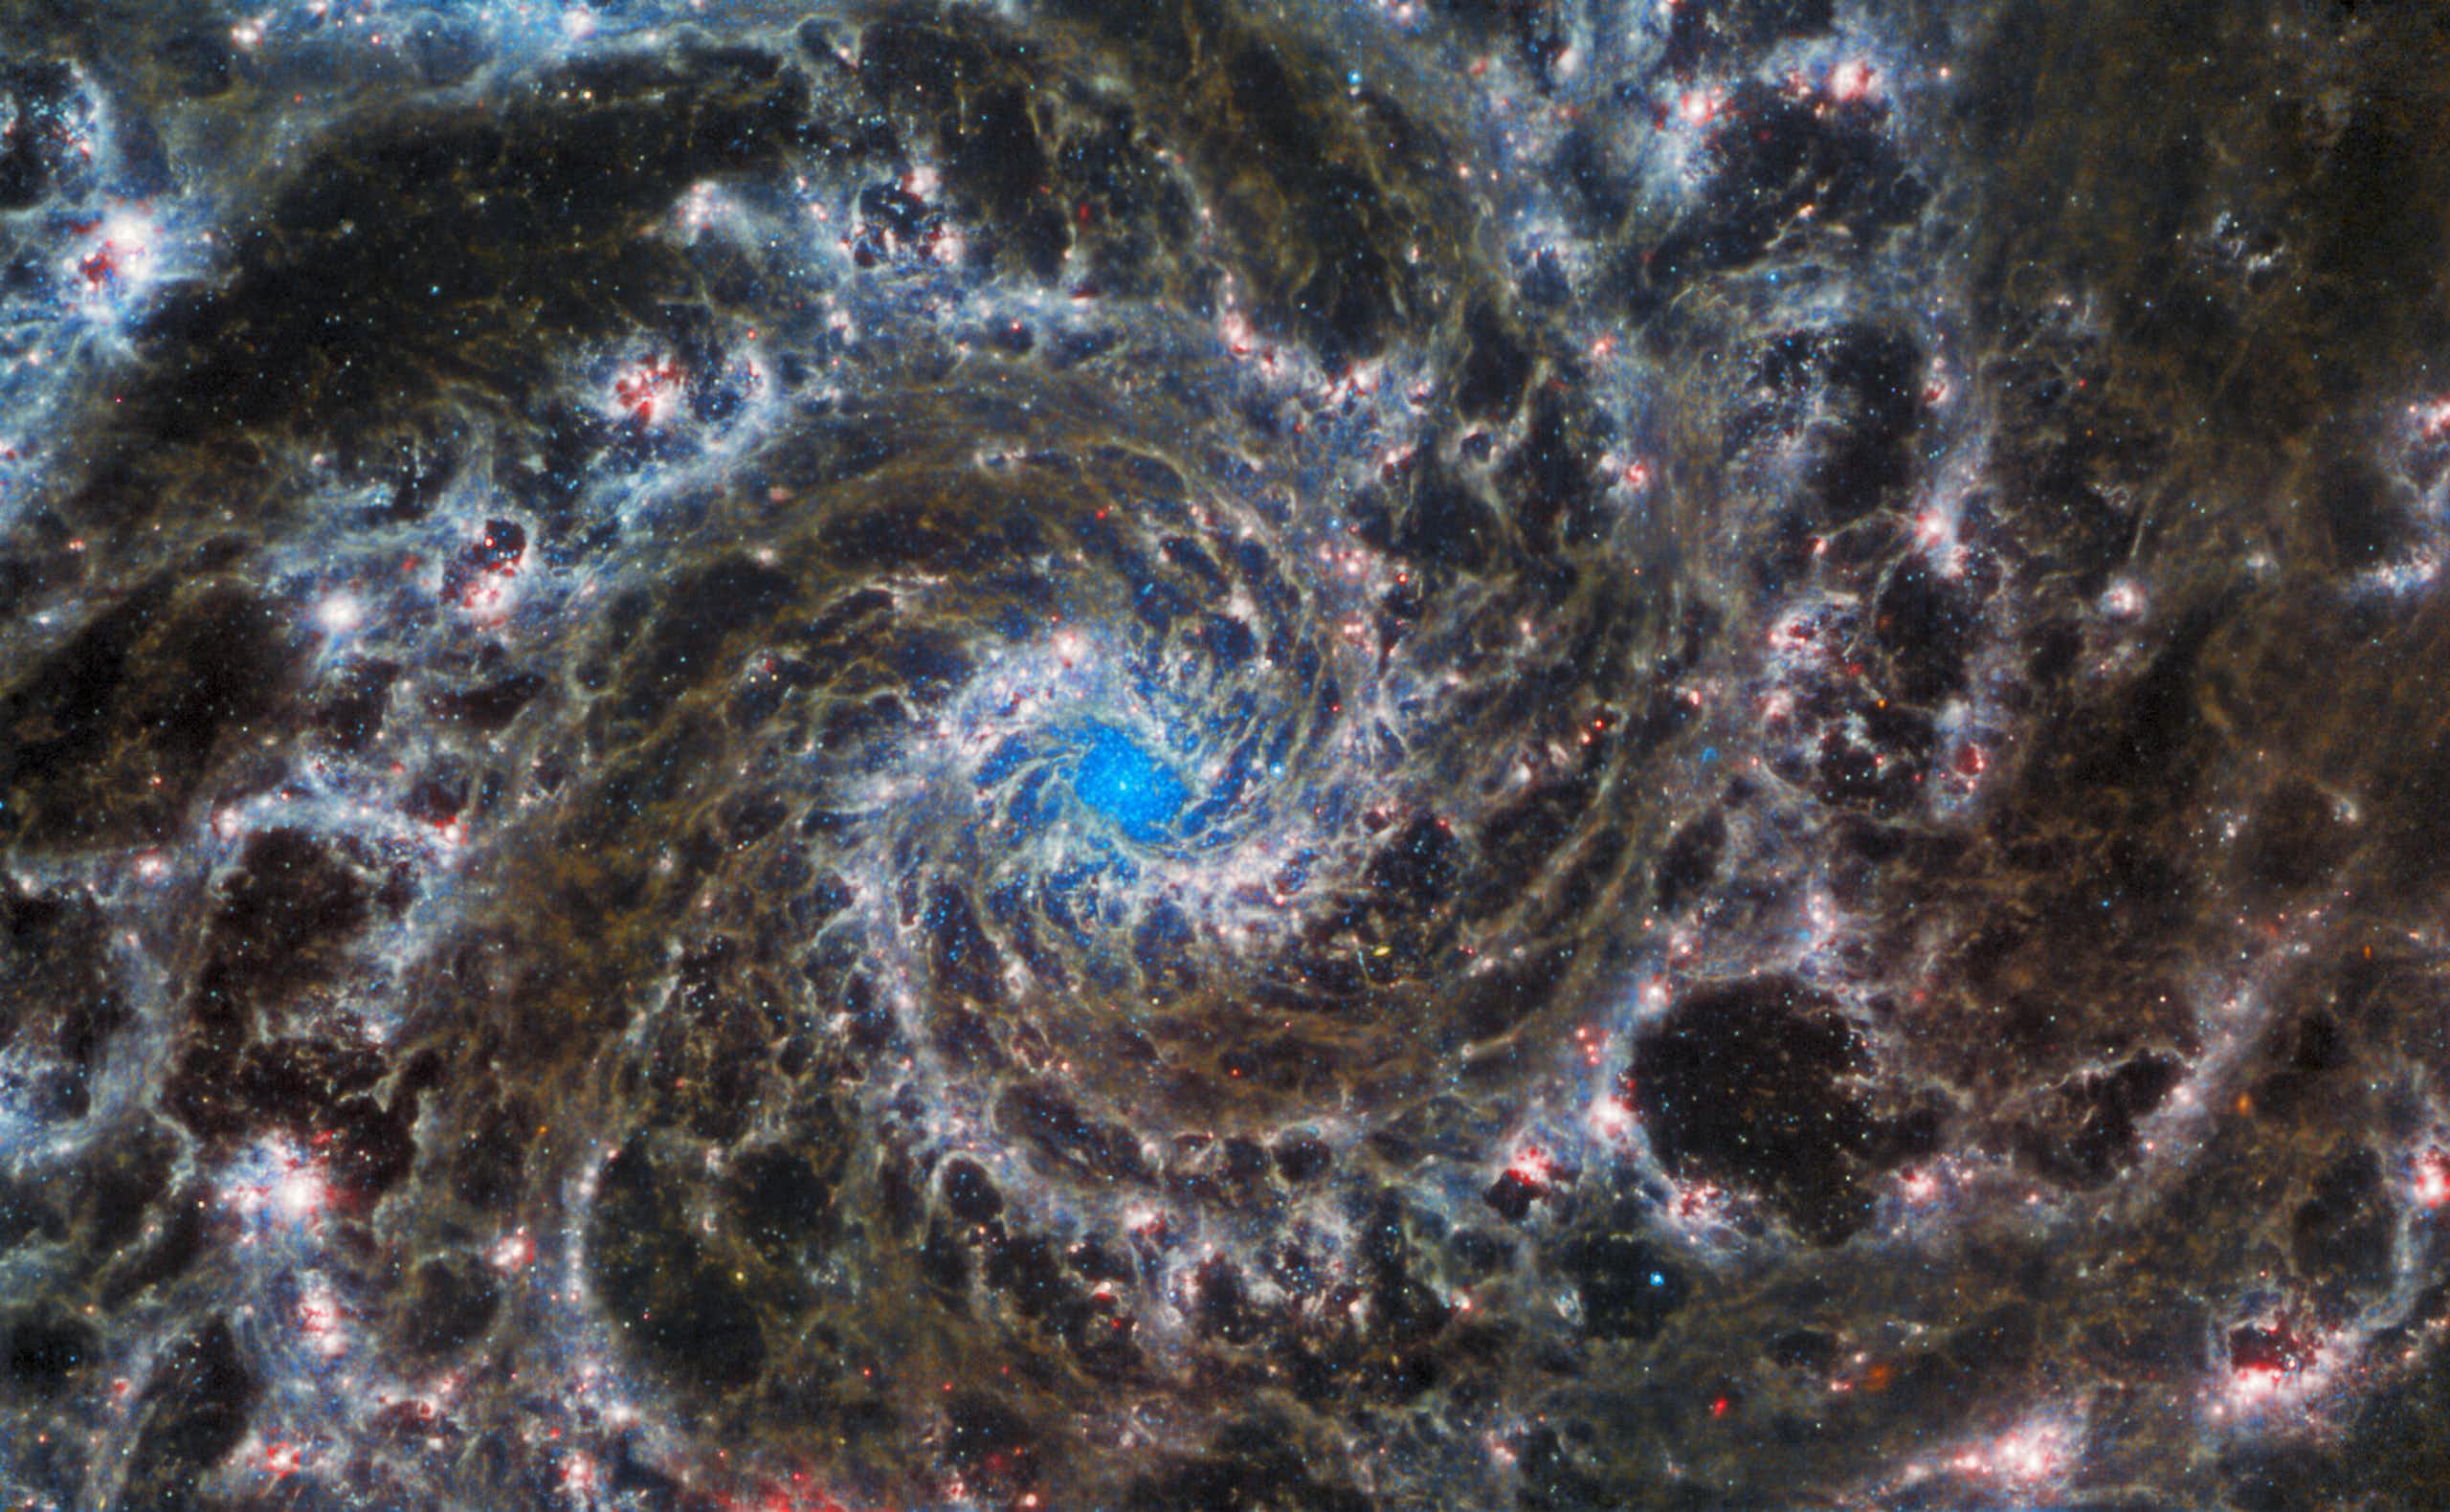 Imagem da galáxia M74, também conhecida como Galáxia Fantasma